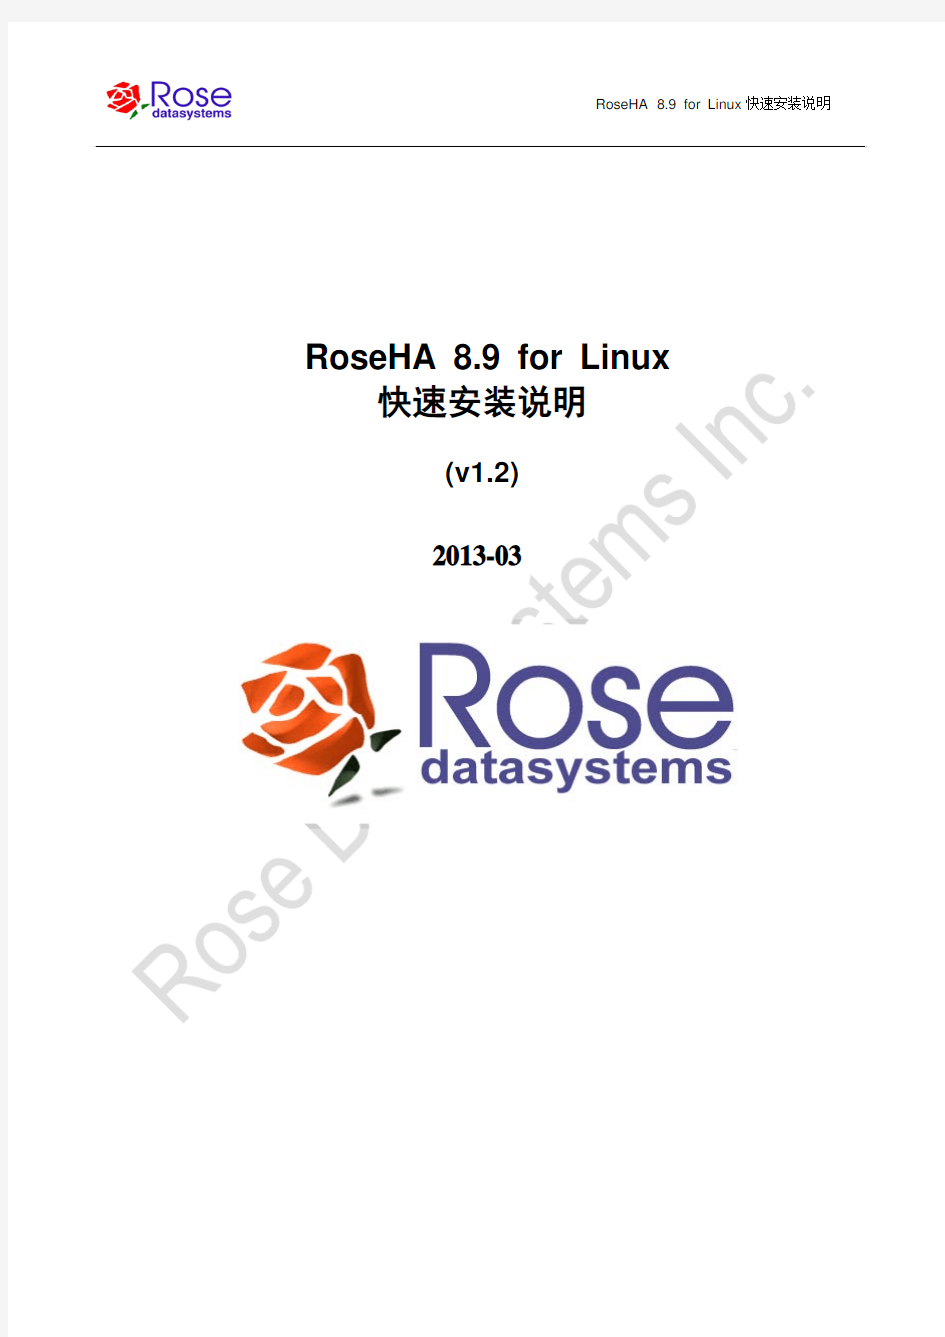 RoseHA 8.9 for Linux快速安装说明